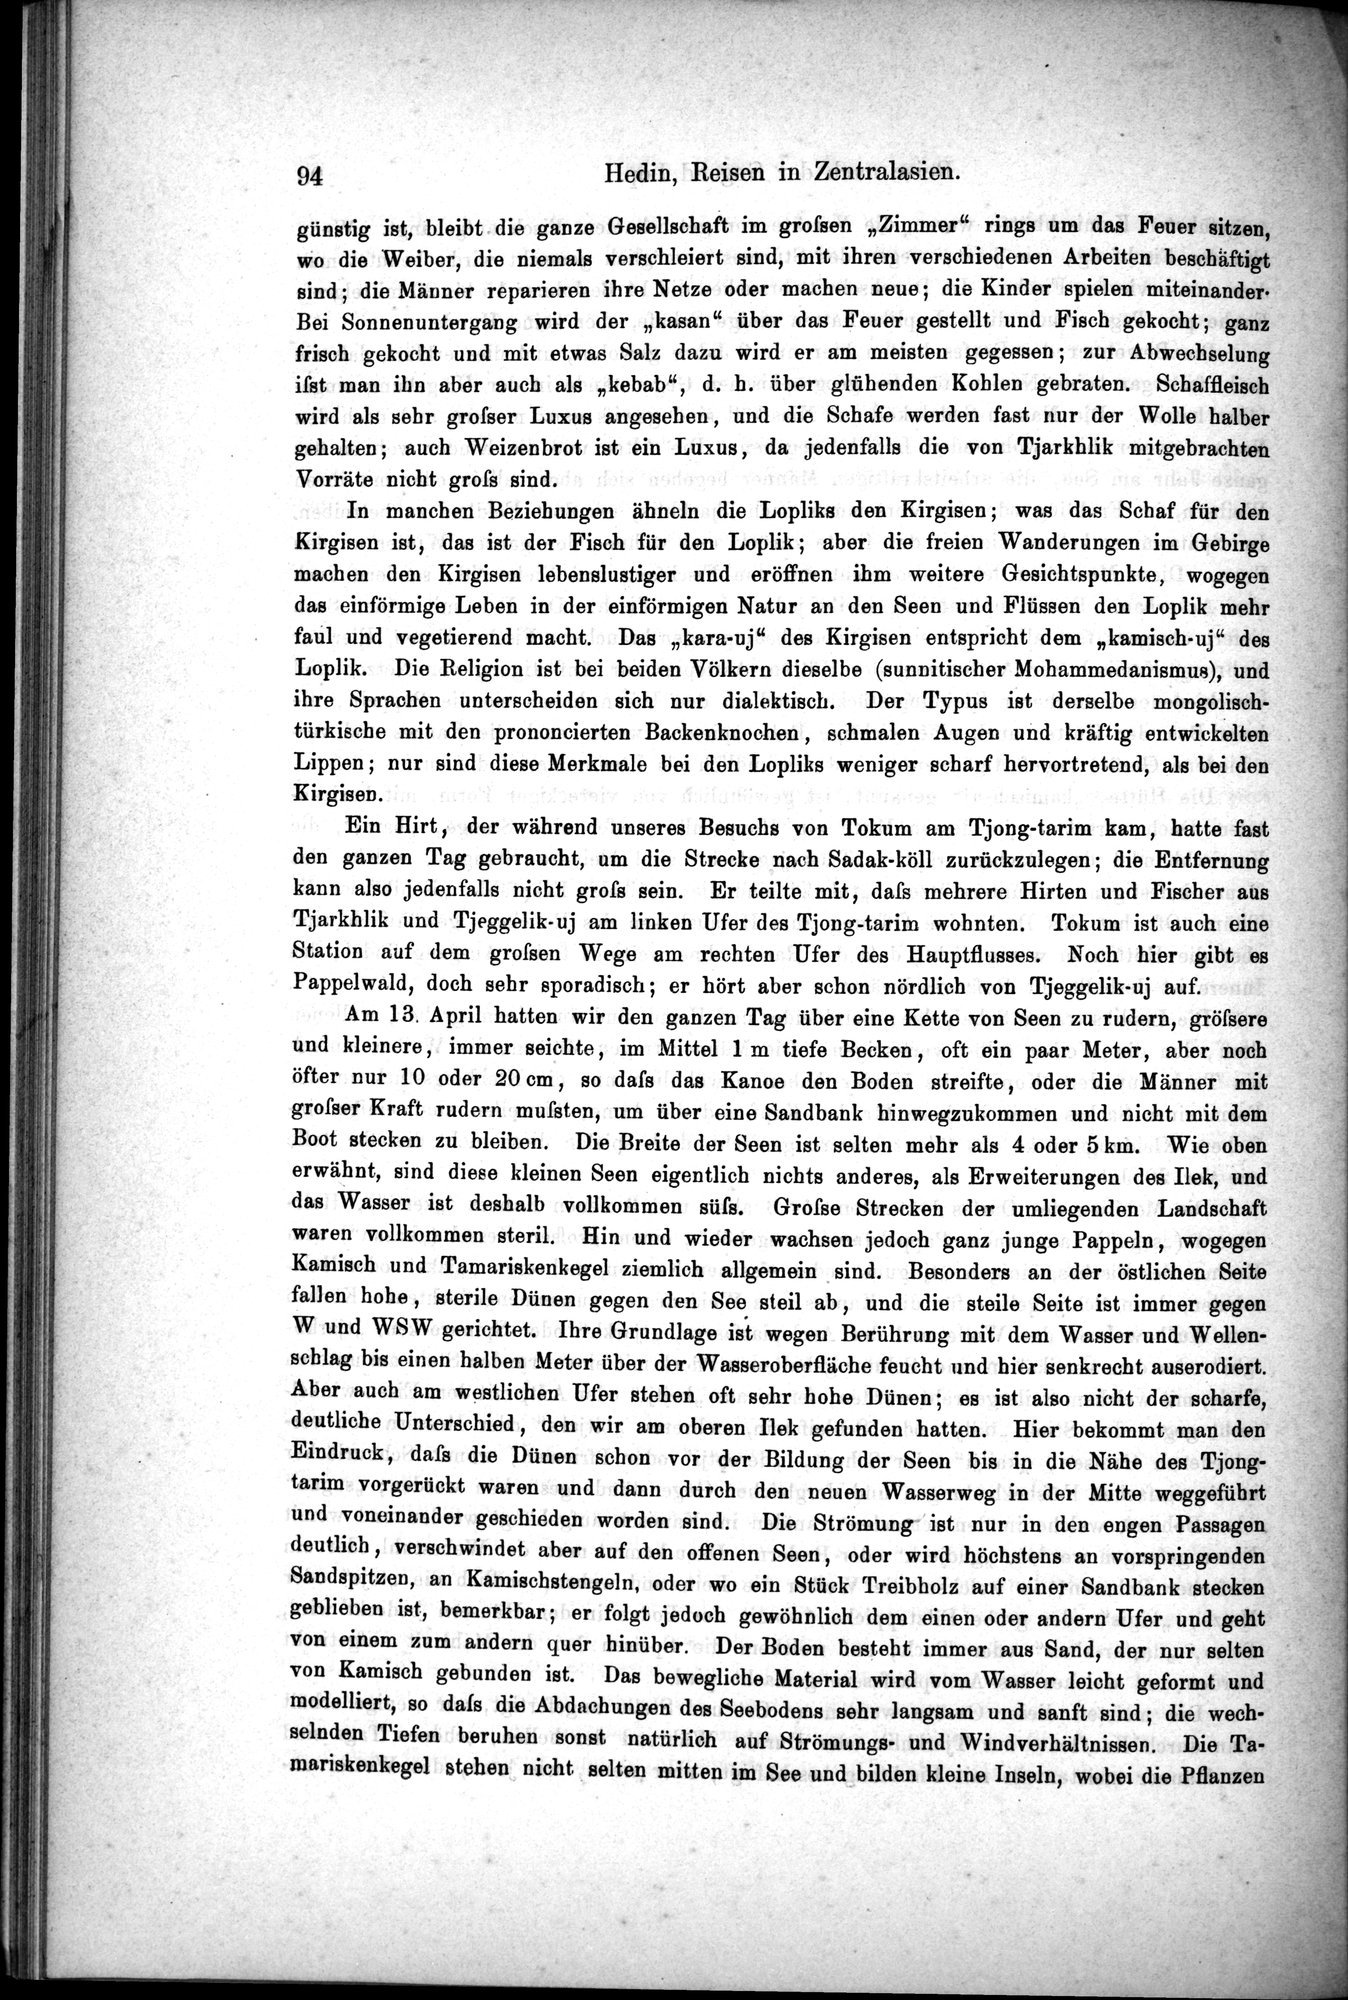 Die Geographische-Wissenschaftlichen Ergebnisse meiner Reisen in Zentralasien, 1894-1897 : vol.1 / Page 106 (Grayscale High Resolution Image)